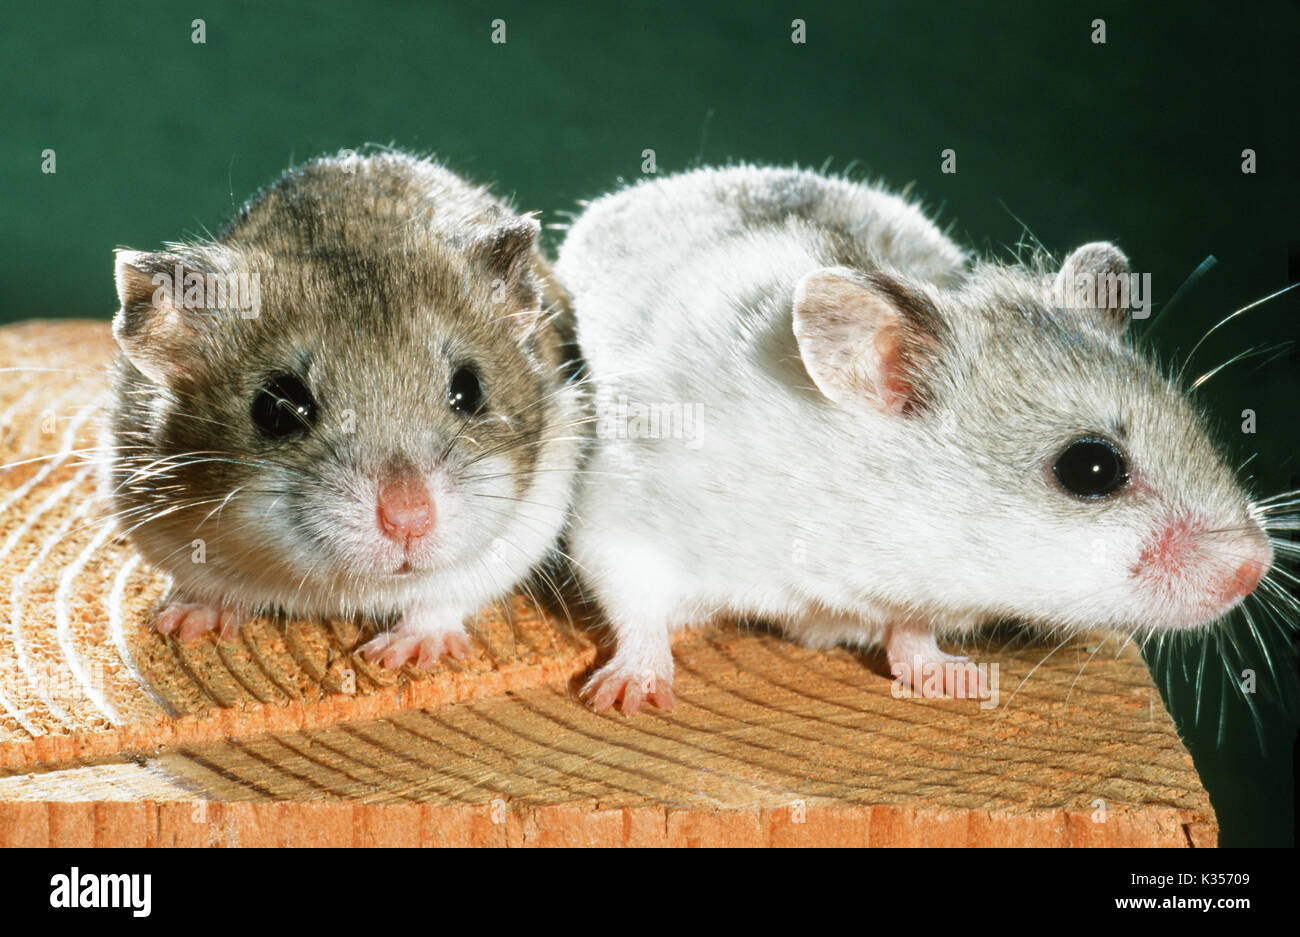 Chinesische Hamster barabensis Cricetulus griseus). Zeigen Variationen in Farbe. Normale Wildform oder agouti Fell auf der linken Seite. Pet- und Labortiere. Stockfoto